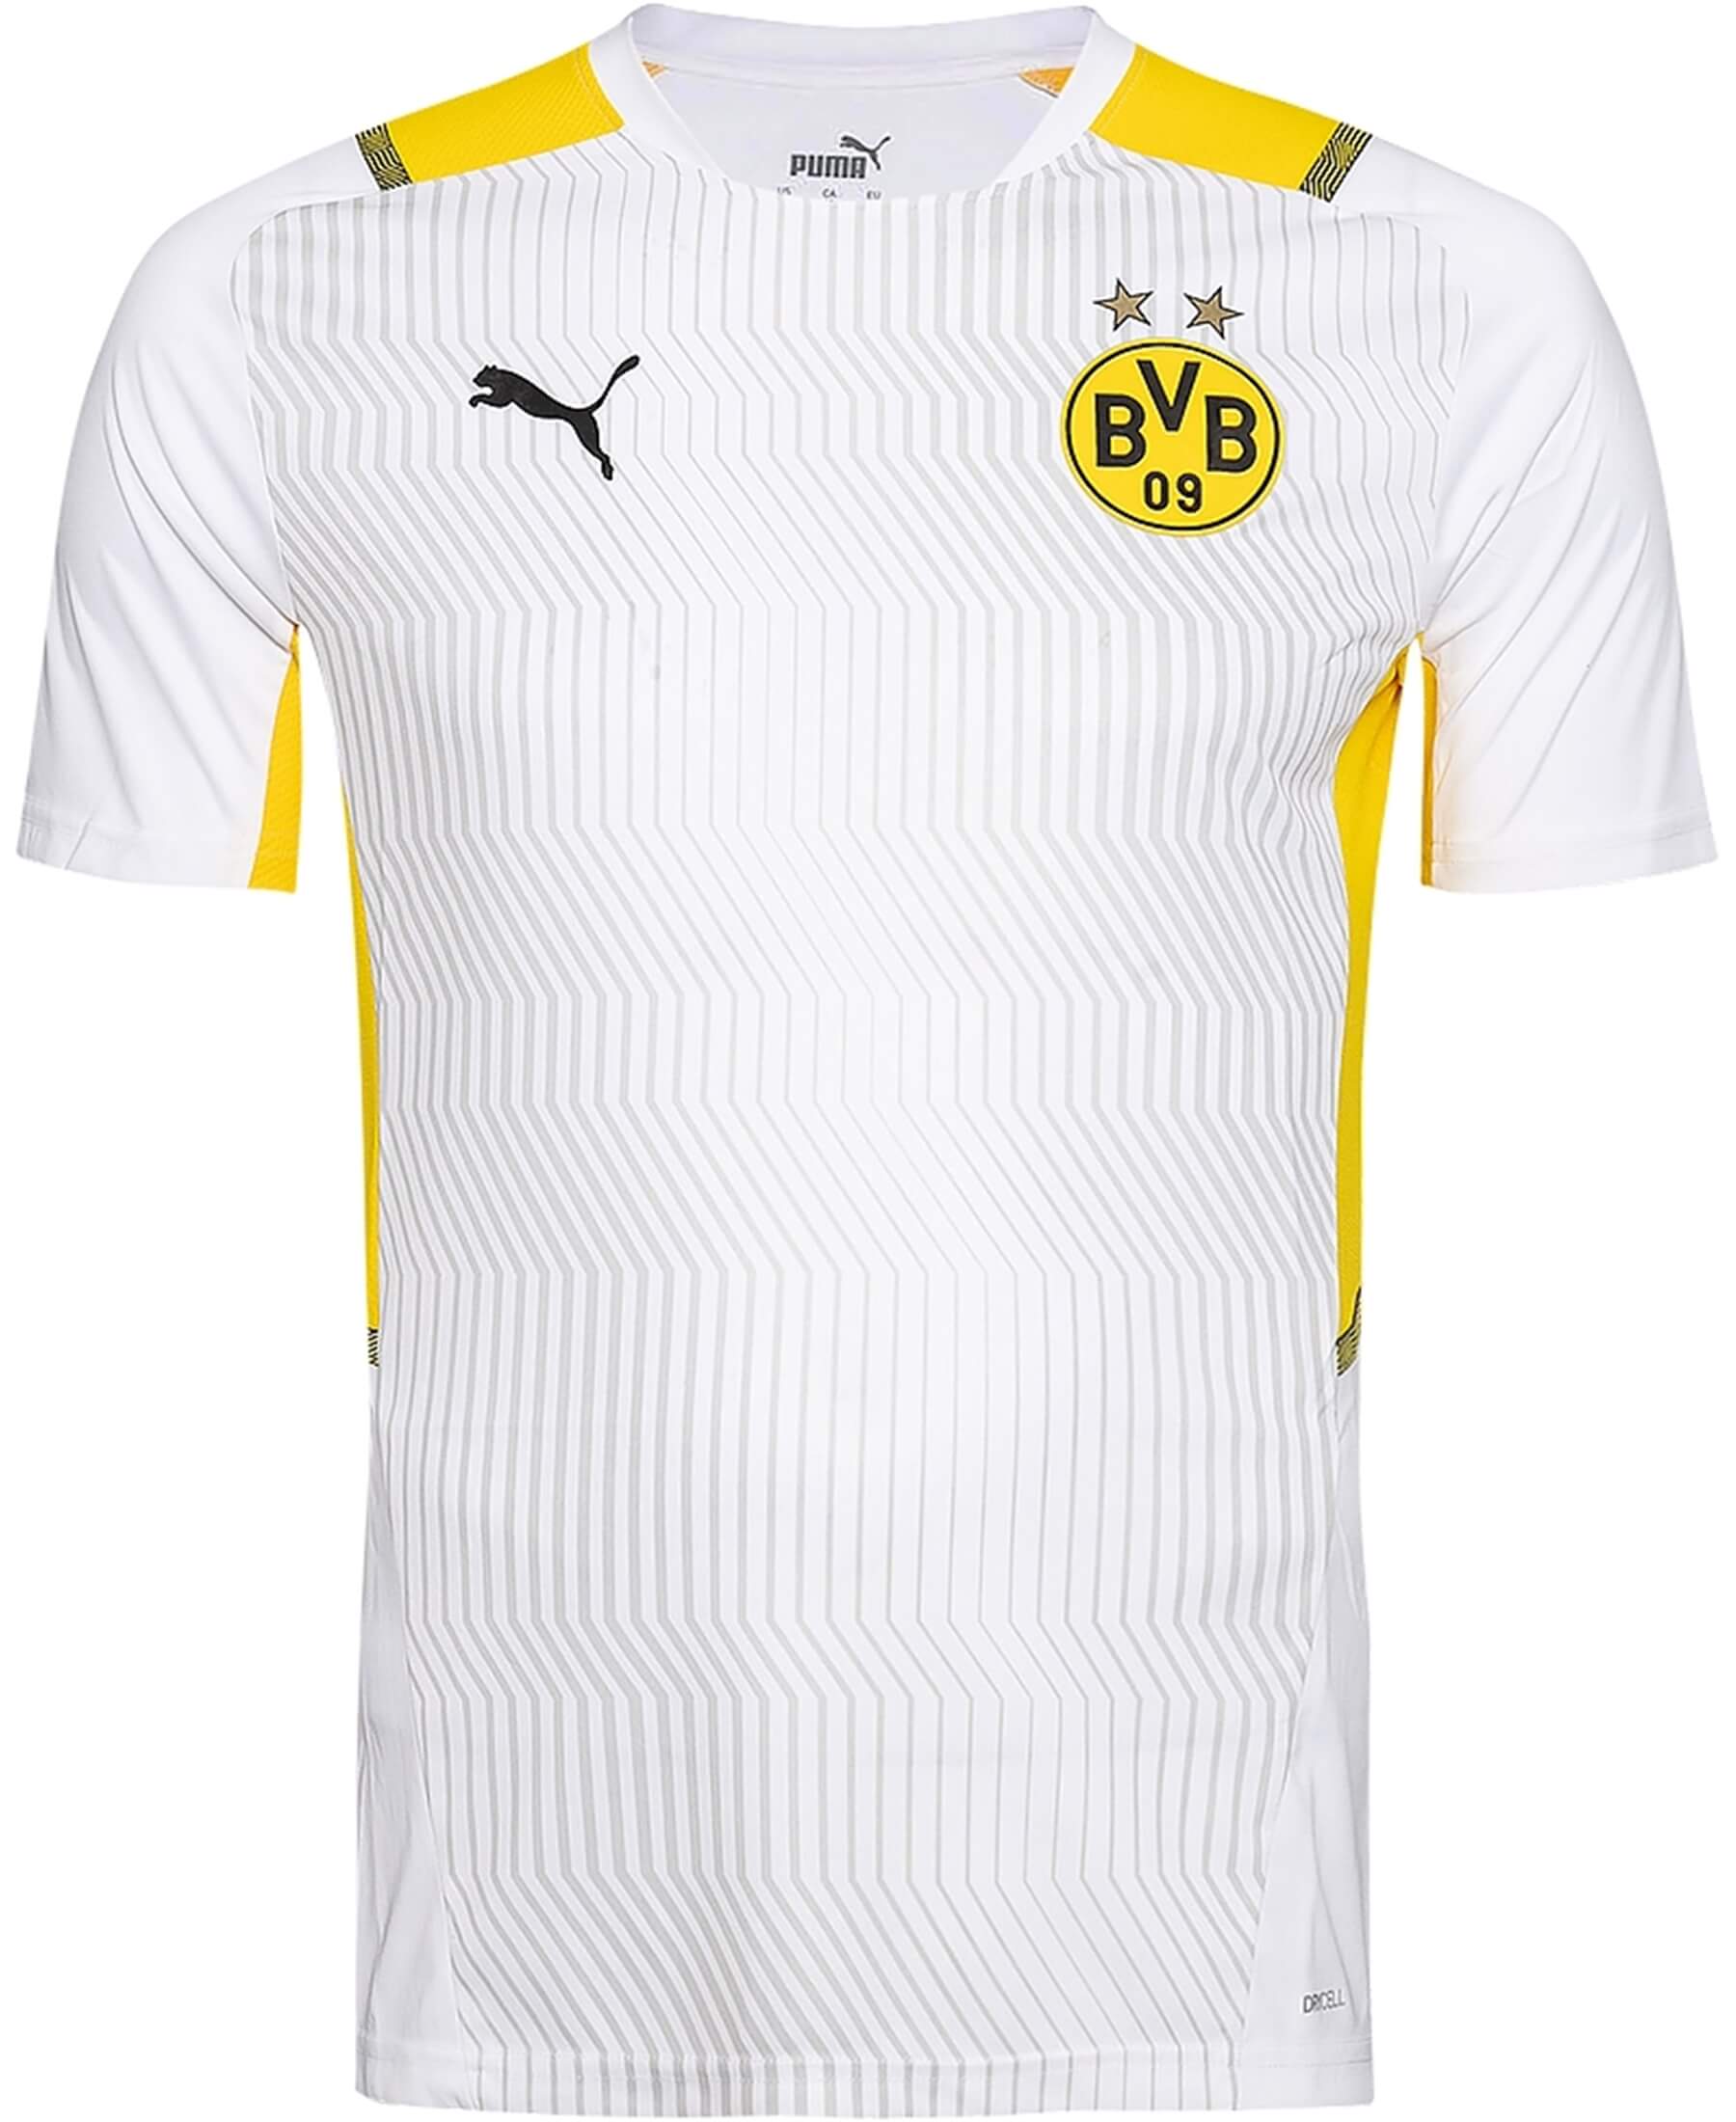 Entdecke das offizielle PUMA Borussia Dortmund BVB Trainingsshirt 2021/2022 bei SHOP4TEAMSPORT. Unterstütze deinen Verein mit diesem hochwertigen Trainingsshirt, das mit dem BVB-Logo und dynamischem Design deine Fußballbegeisterung zeigt. Das atmungsaktive Material bietet maximalen Tragekomfort während des Trainings oder im Alltag. Die perfekte Passform und hohe Funktionalität machen dieses Shirt zu einem Muss für jeden BVB-Fan.